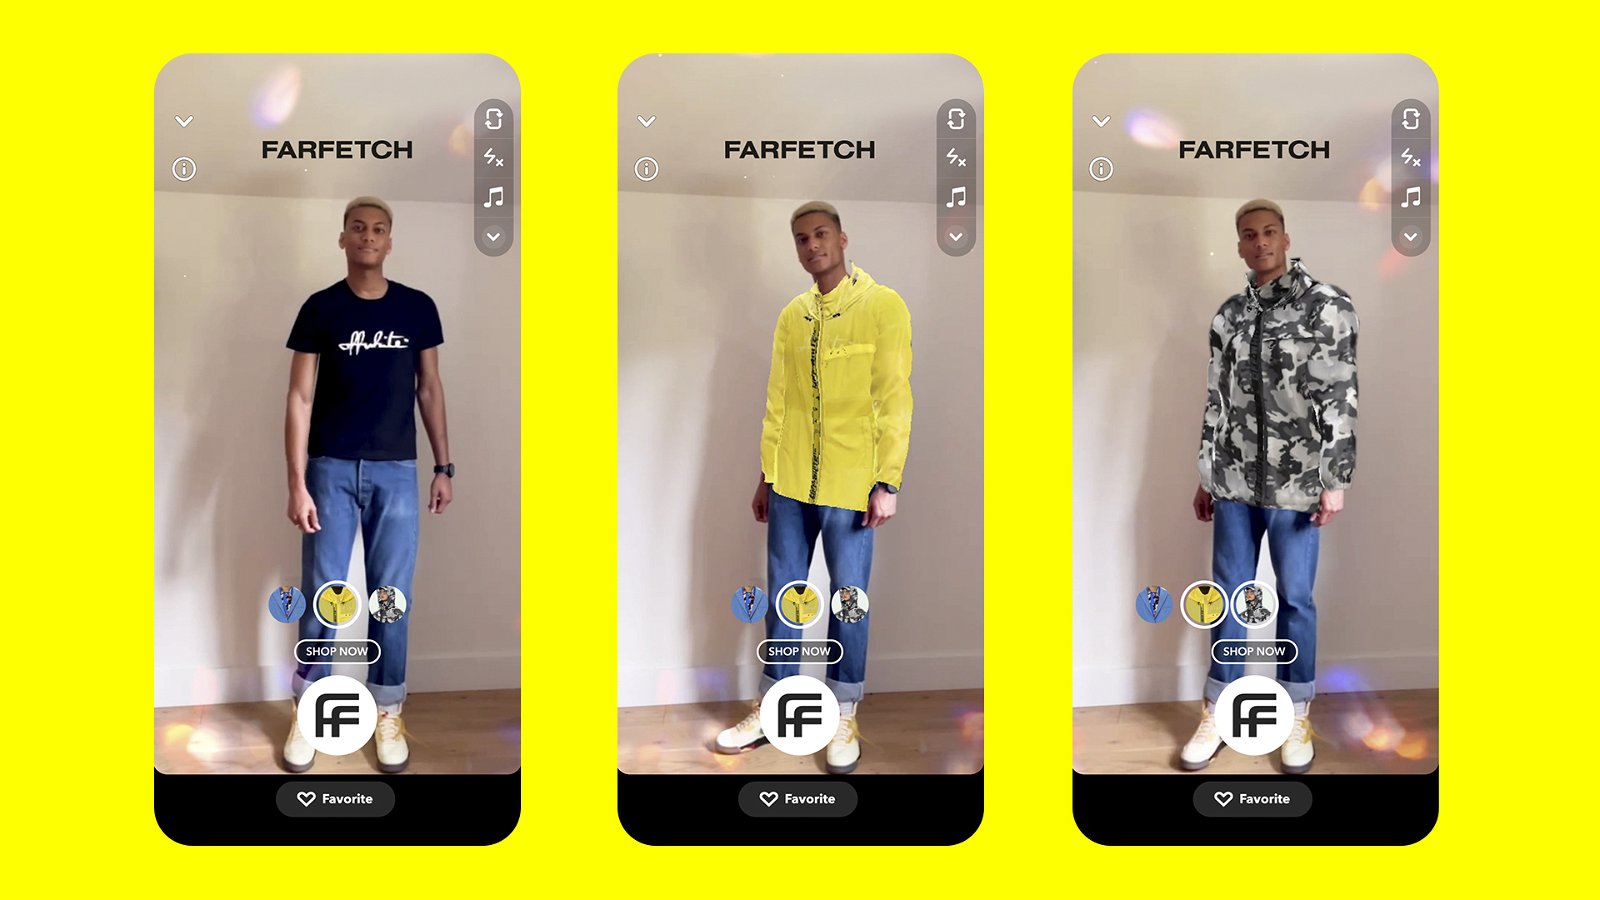 透过AR技术，Snapchat用家可以透过App来视化在现实生活中穿著商品的模样，提供如同身临其境的购物体验。与Farfetch的合作，平台研发了3D Body Mesh和以语音控制技术，让消费者可以透过语音和身体动作，指示程式来浏览和查阅尝试的商品。